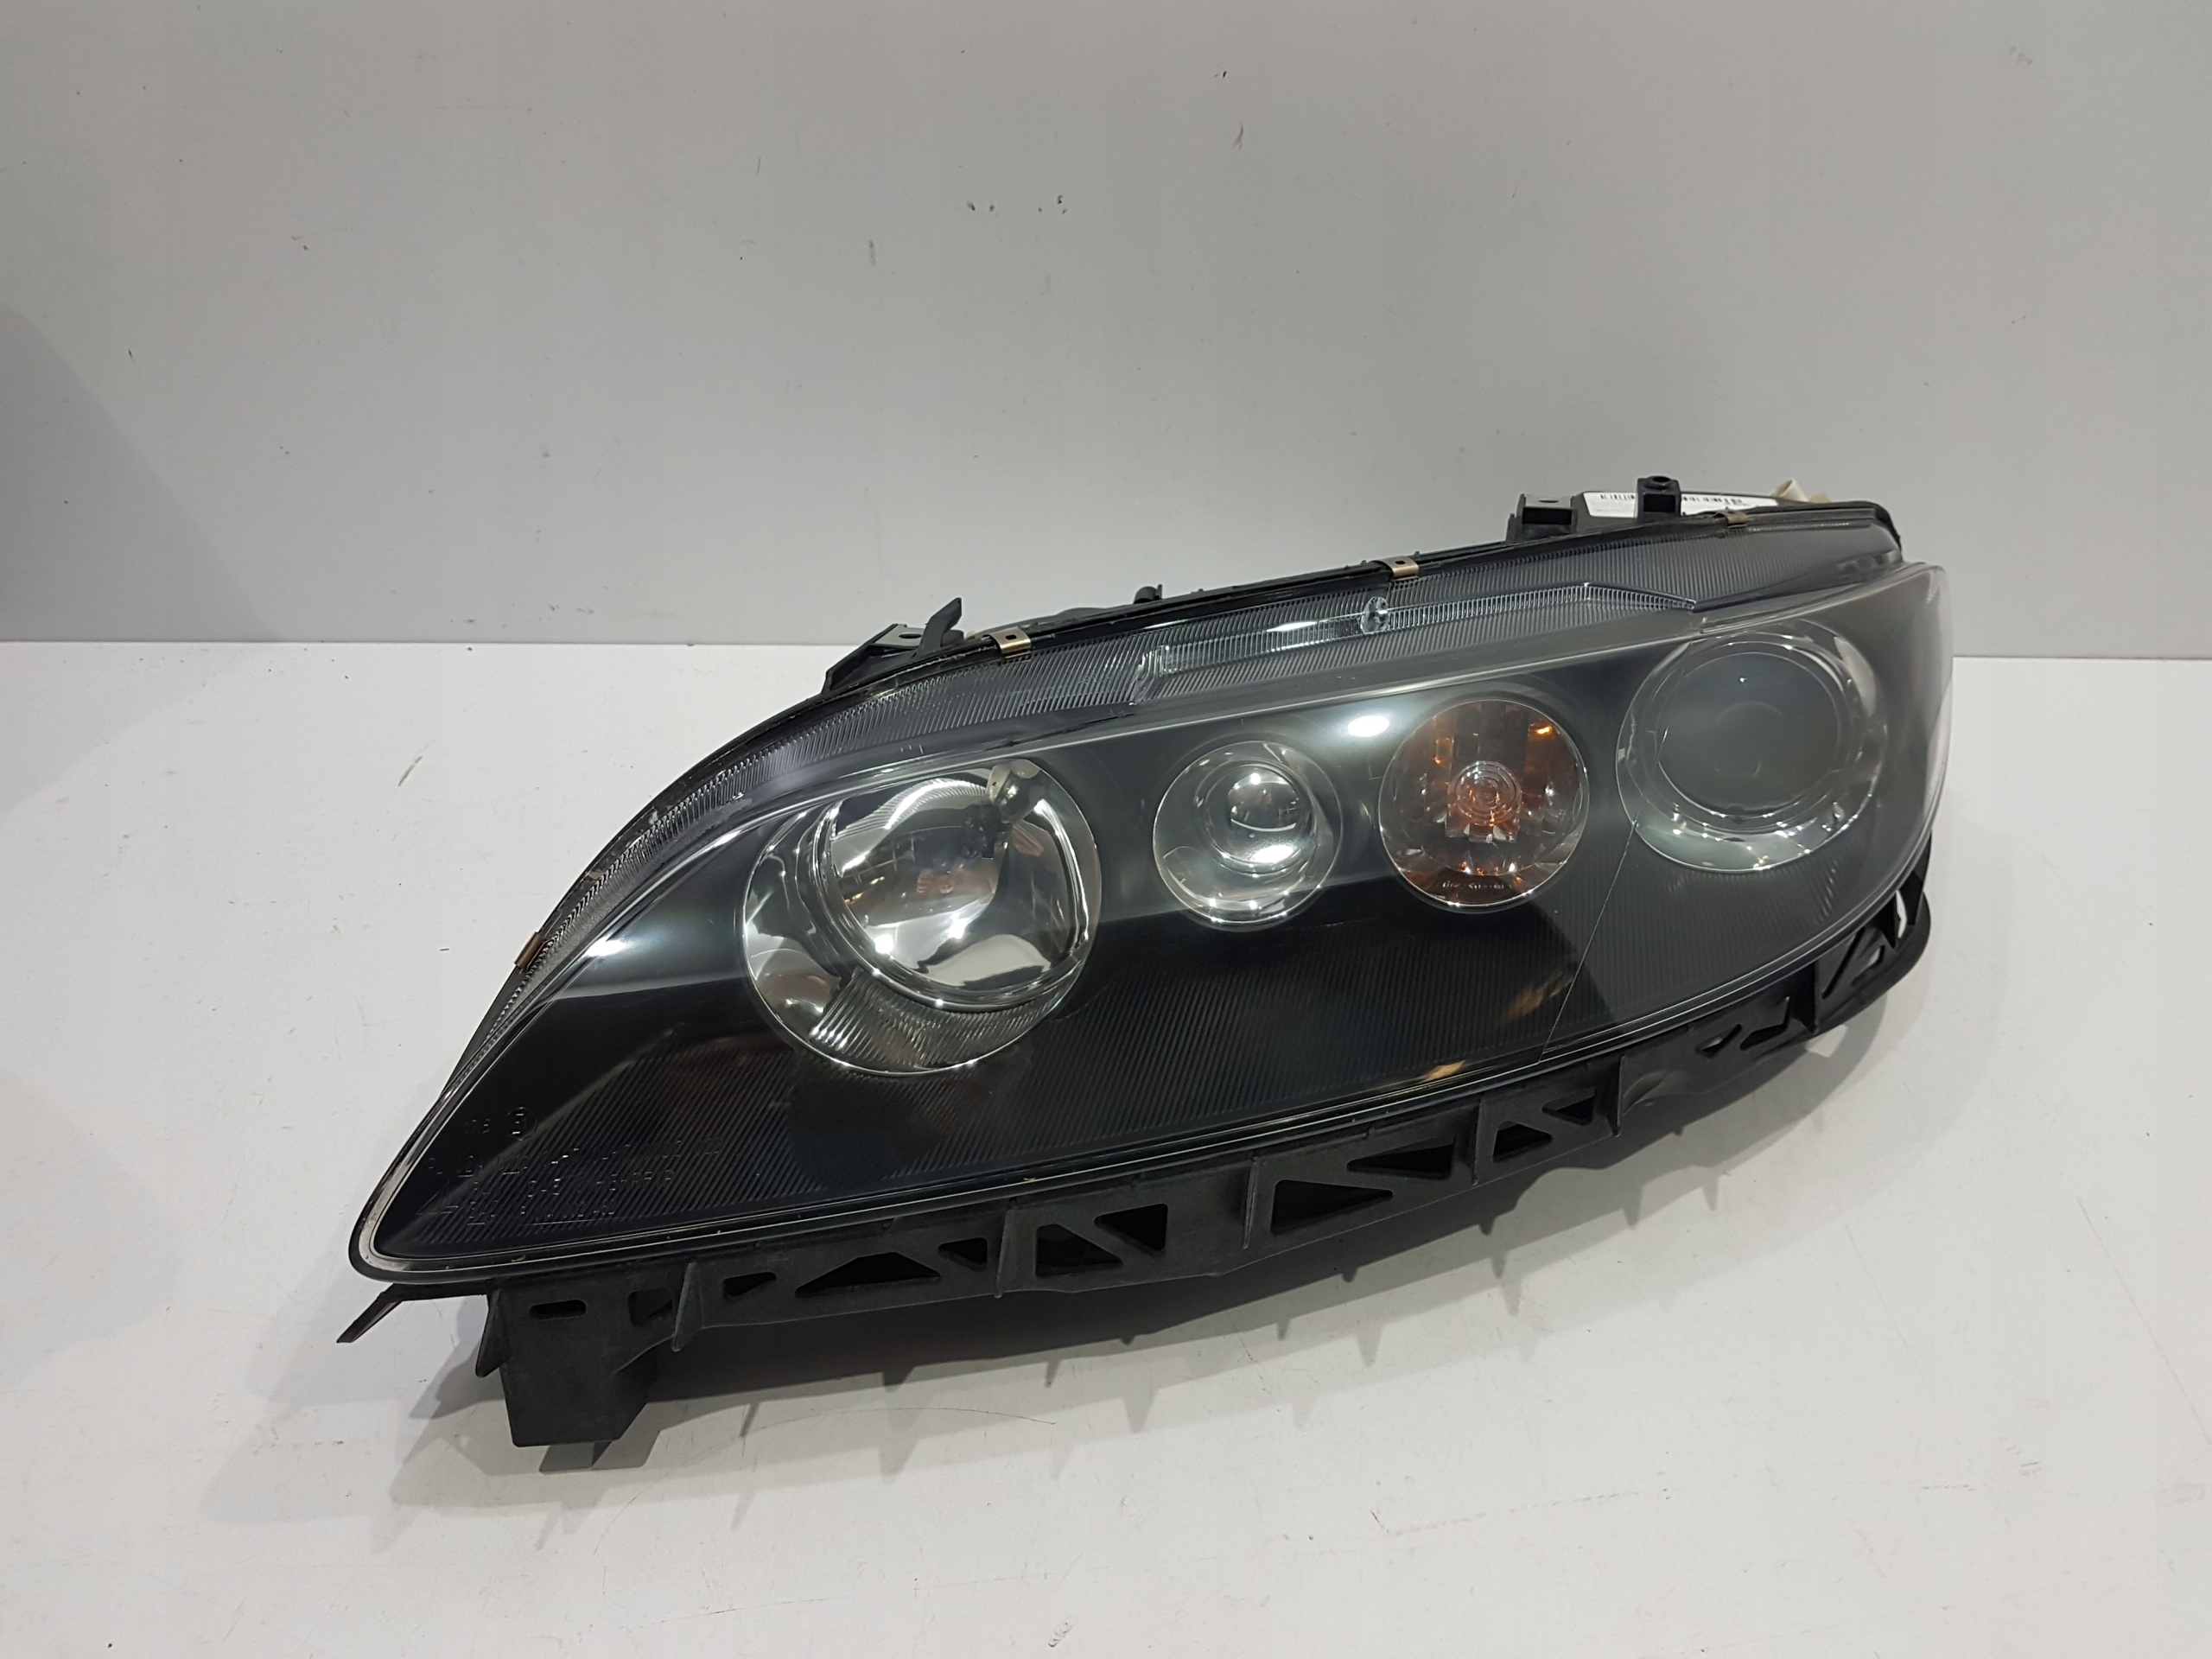 Lampa Lewa Mazda 6 W Lampy Przednie, Automotive Lighting - Oświetlenie - Części Samochodowe - Allegro.pl